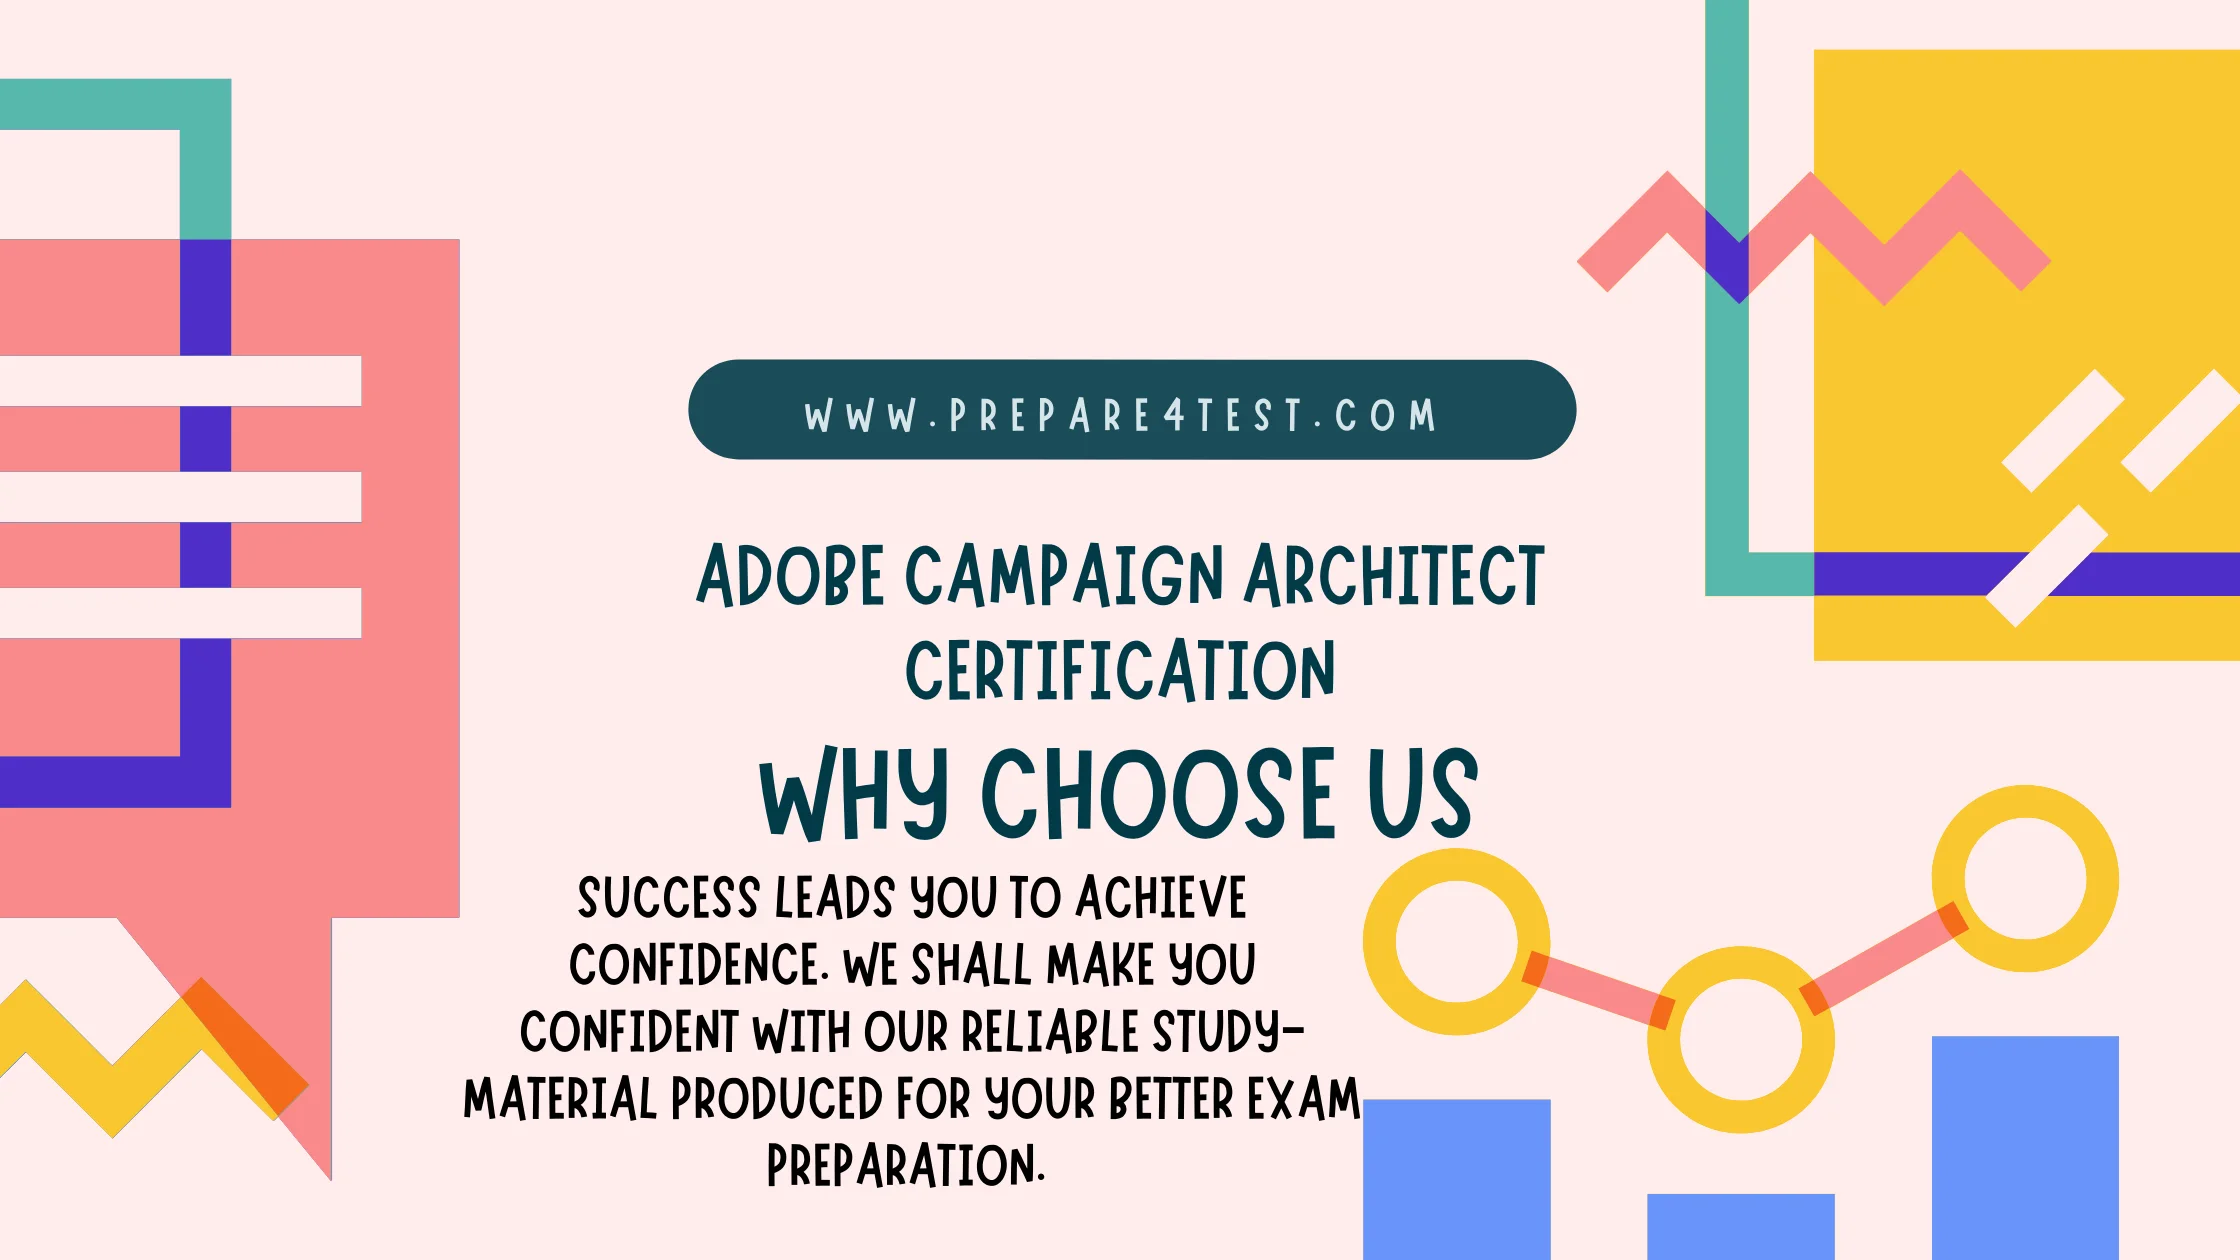 Adobe Campaign Architect Certification Guarantee